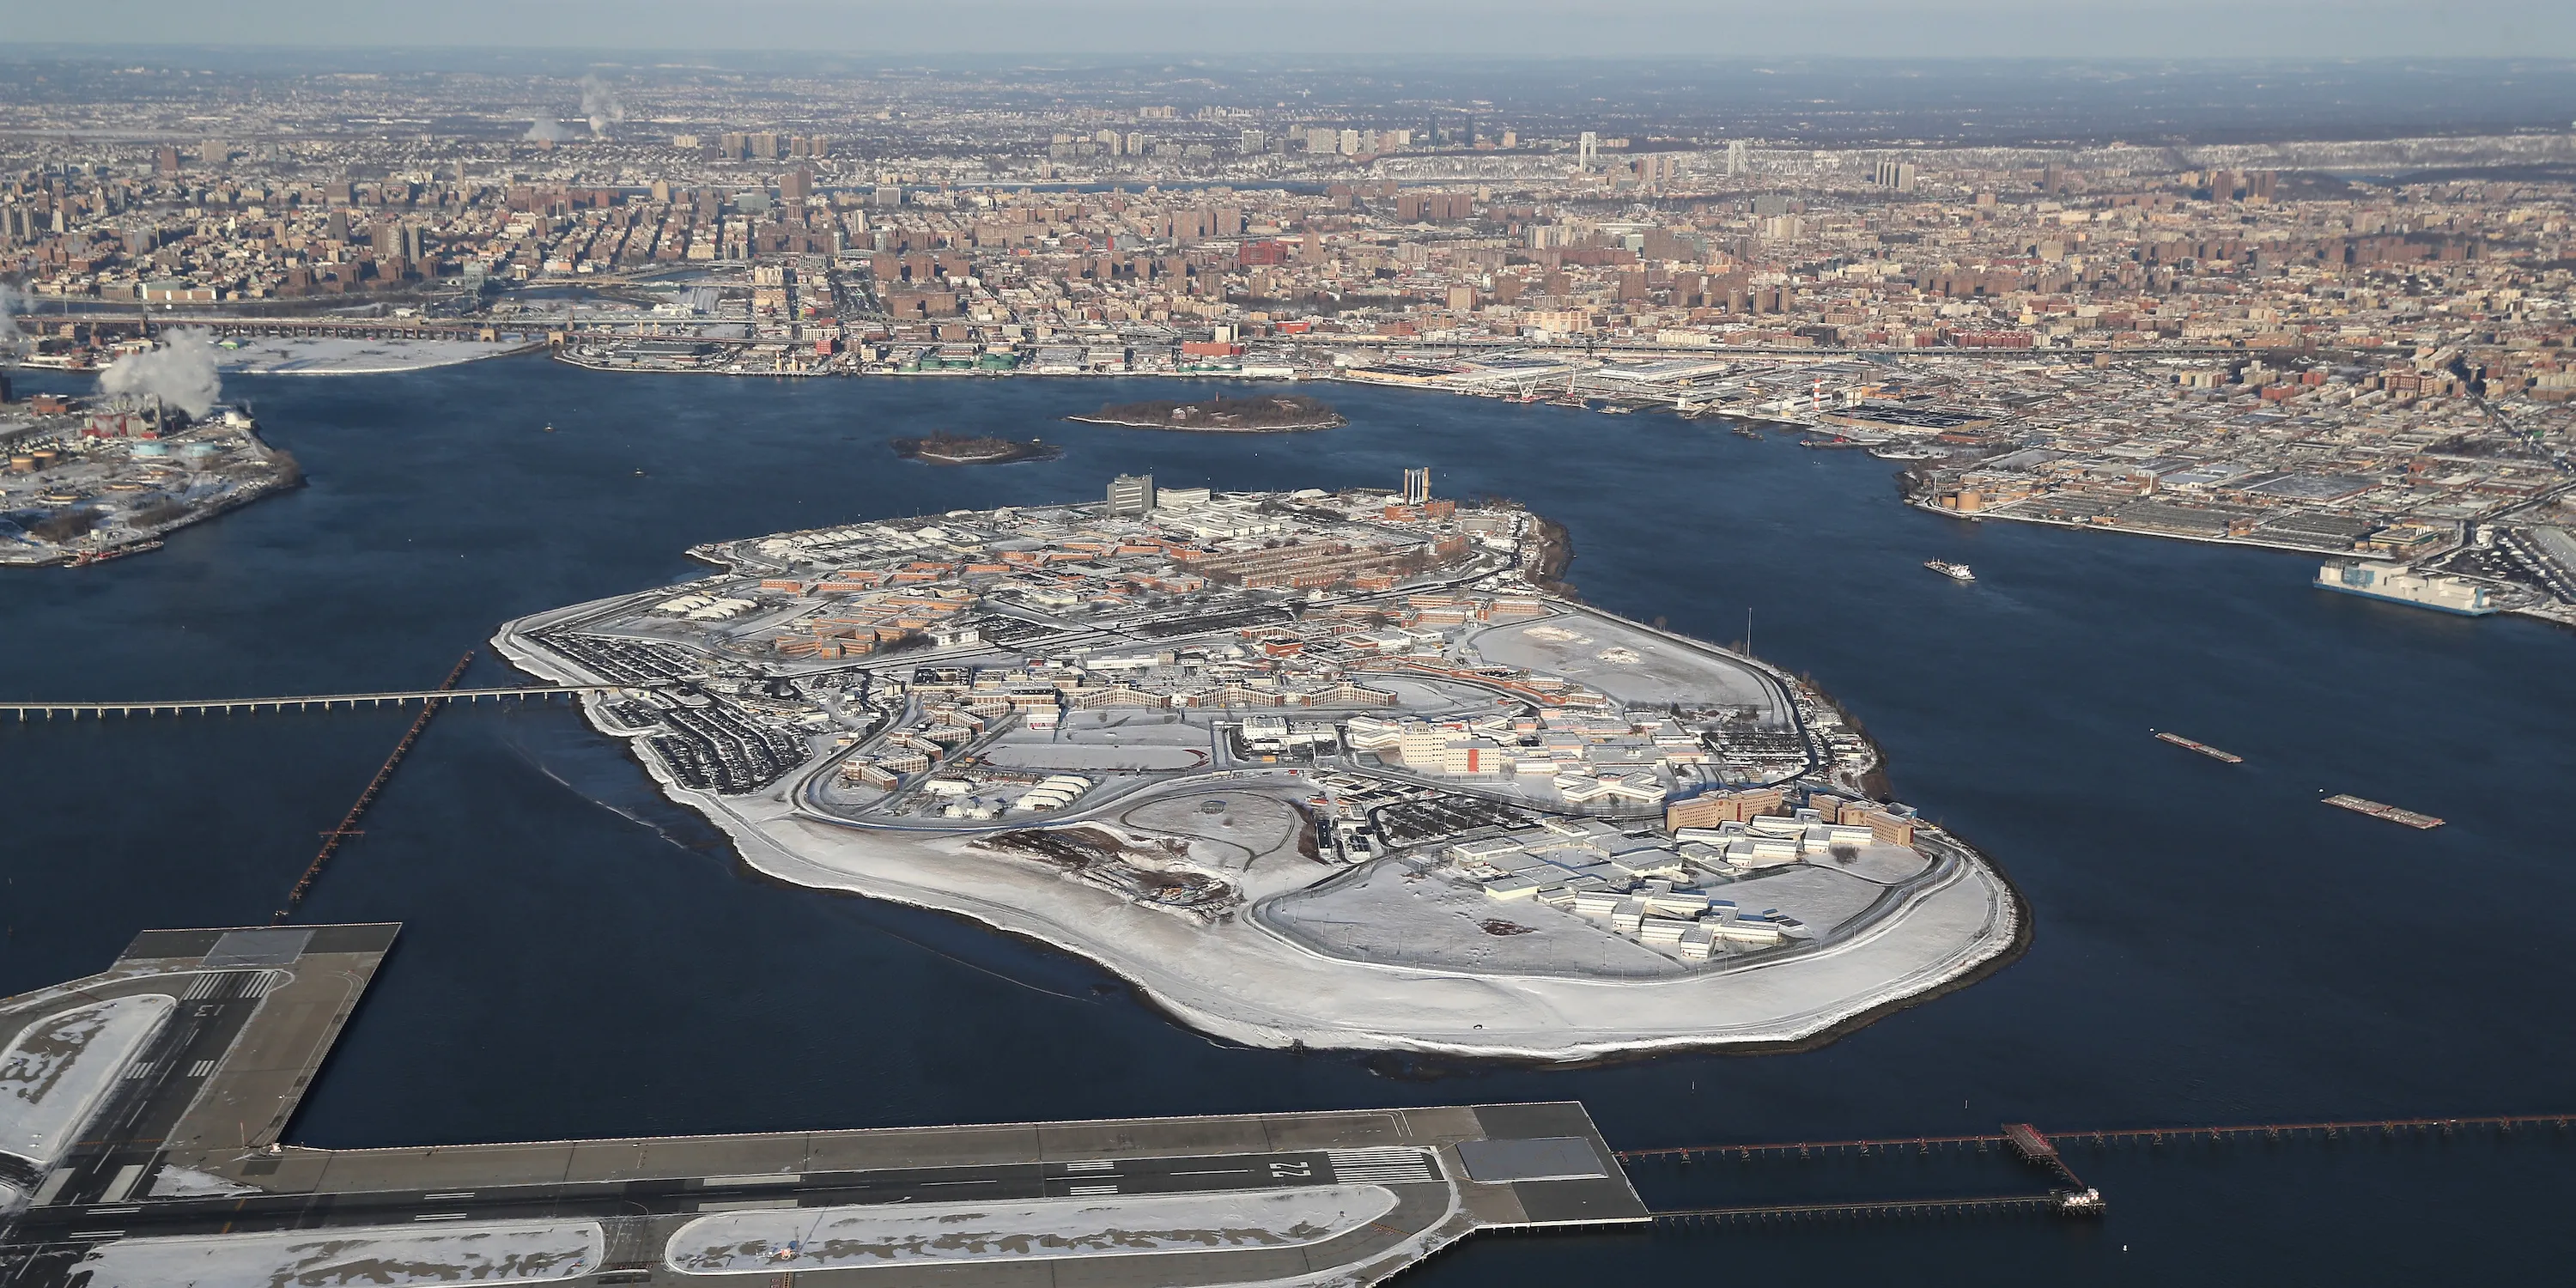 Redesigning Rikers Island (upcoming blog)